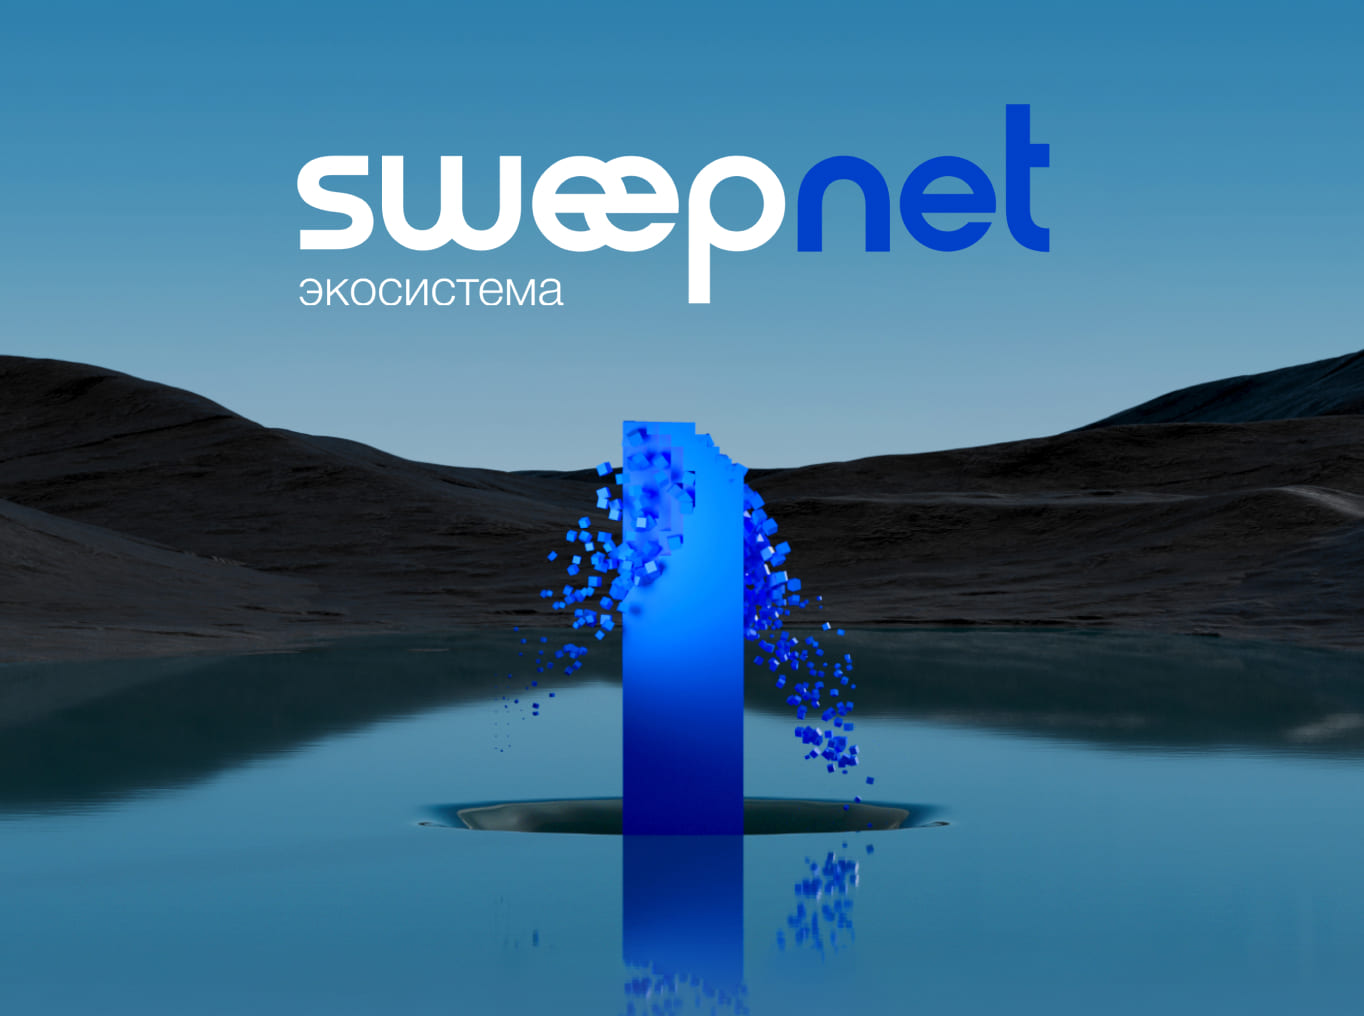 Sweepnet ecosystem functionality